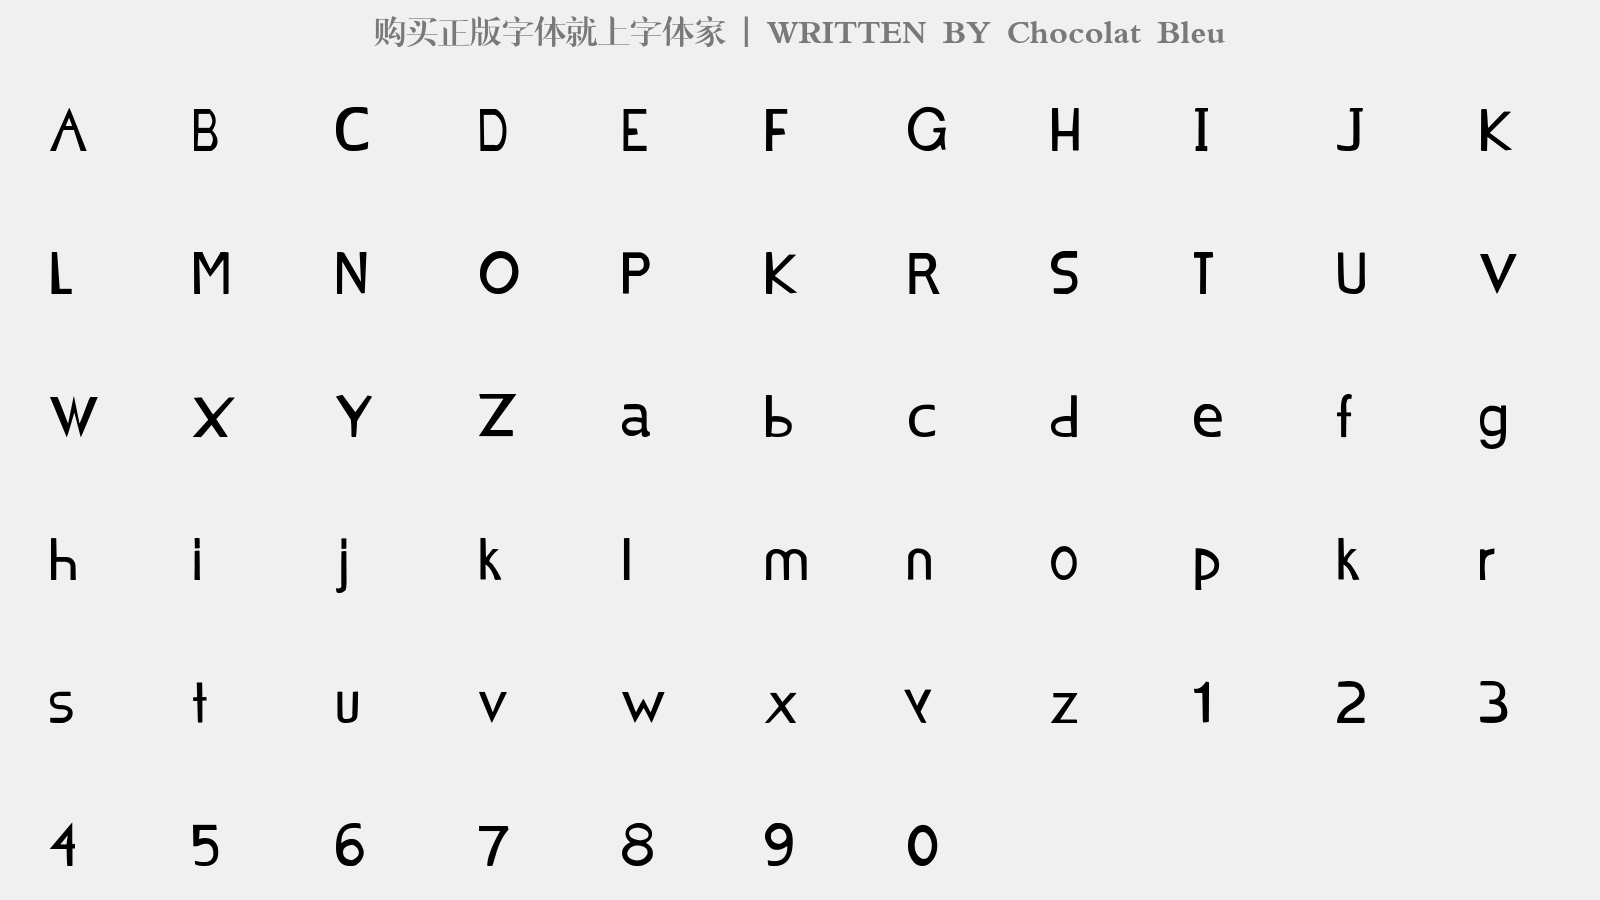 Chocolat Bleu - 大写字母/小写字母/数字